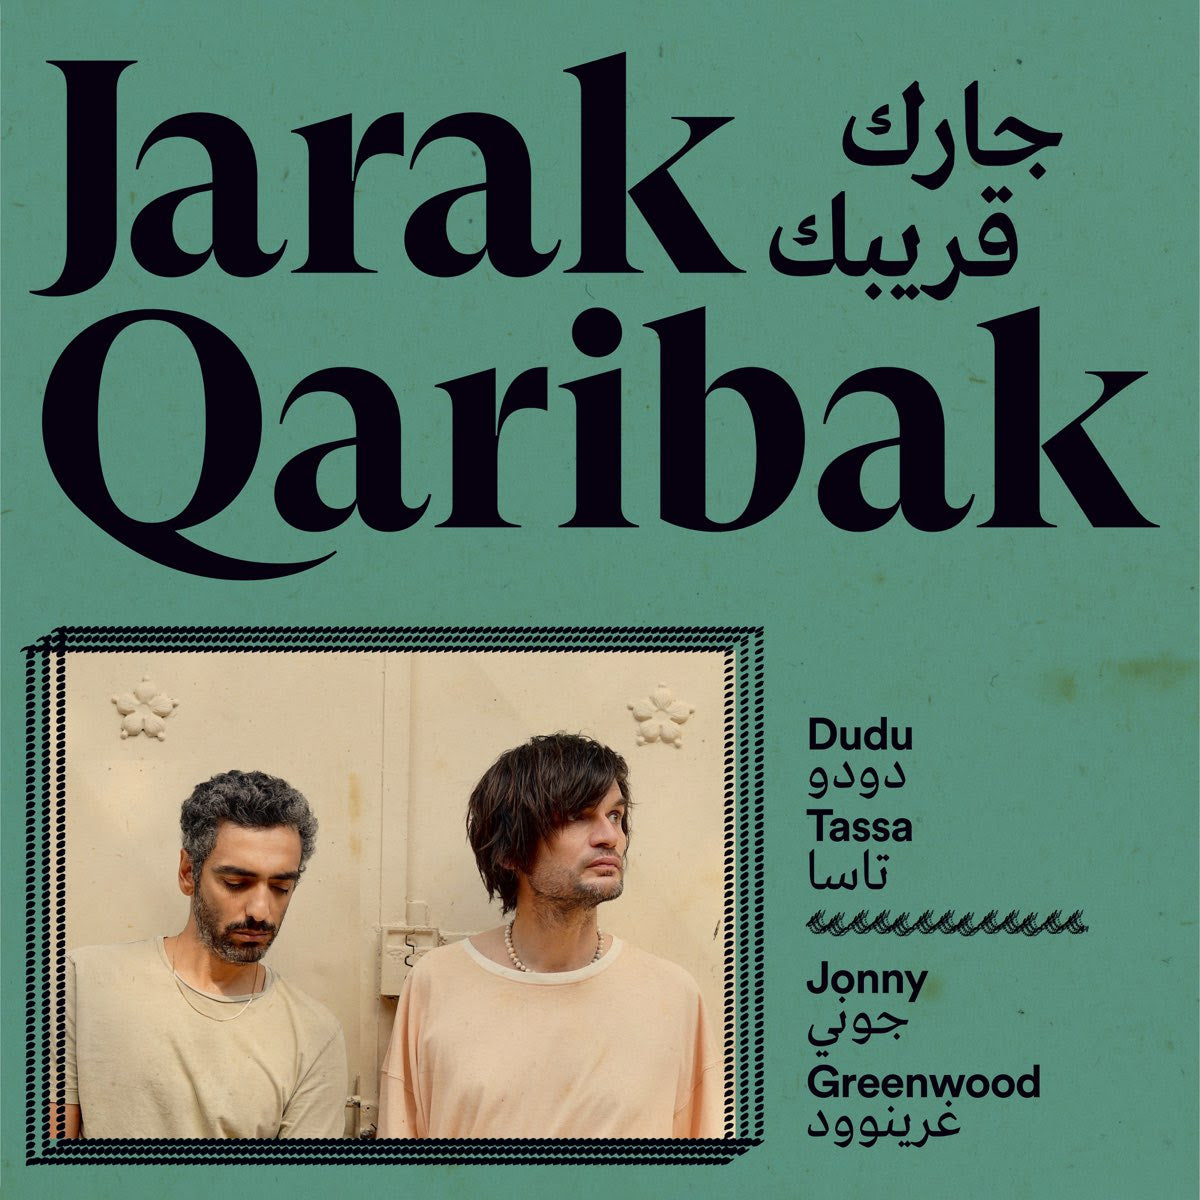 Dudu Tassa & Jonny Greenwood - Jarak Qaribak | Buy the Vinyl LP from Flying Nun Records 